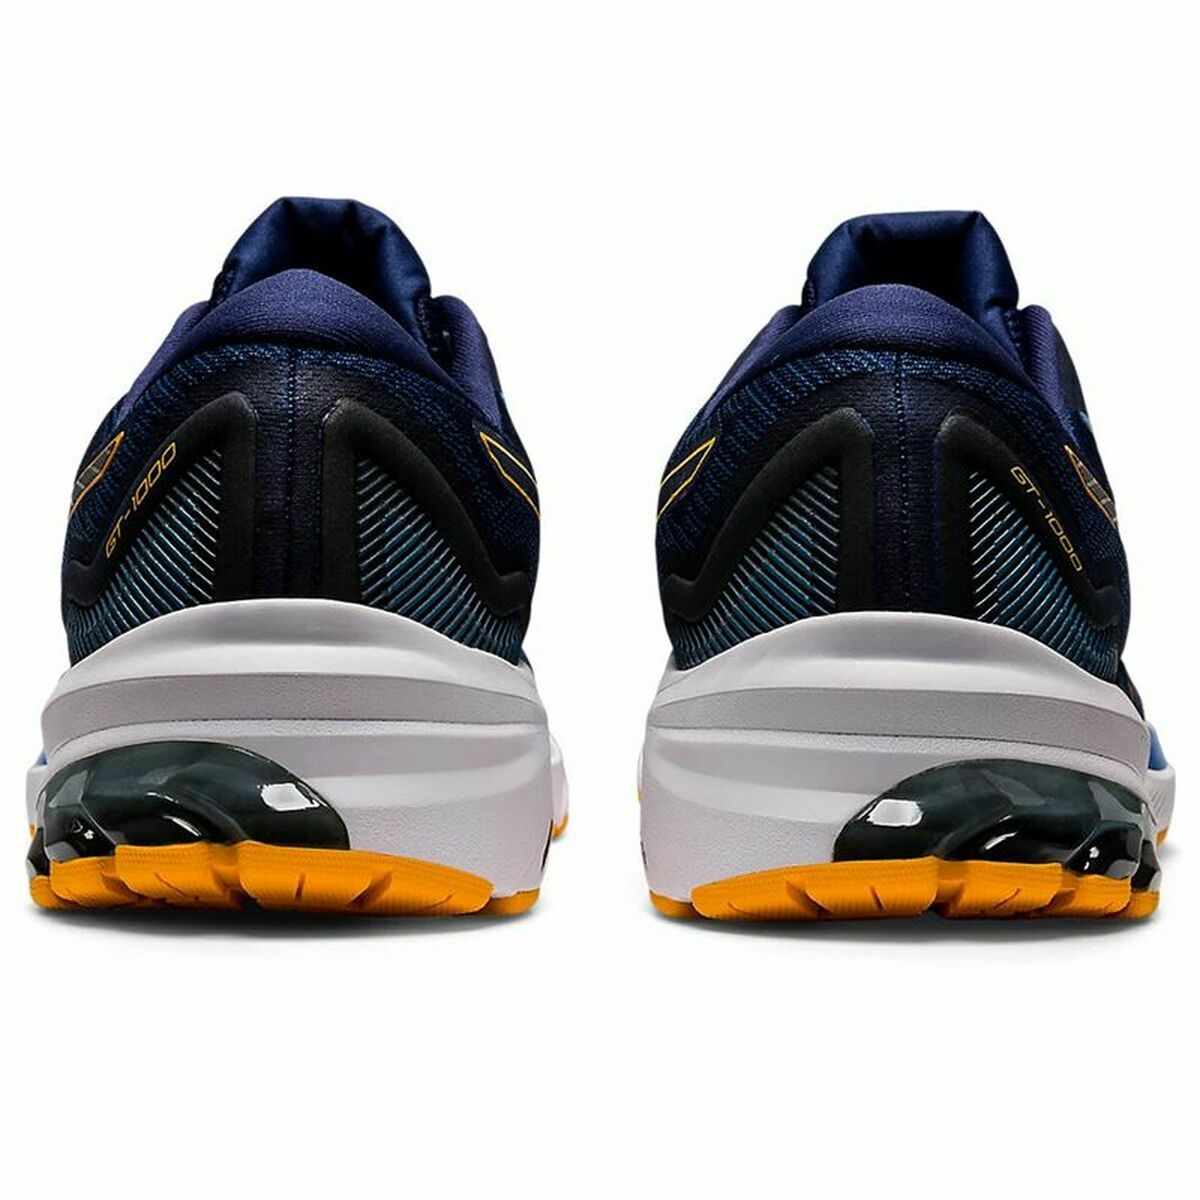 Men's Trainers Asics GT-1000 Blue Sneaker-Shoes - Men-Asics-Urbanheer